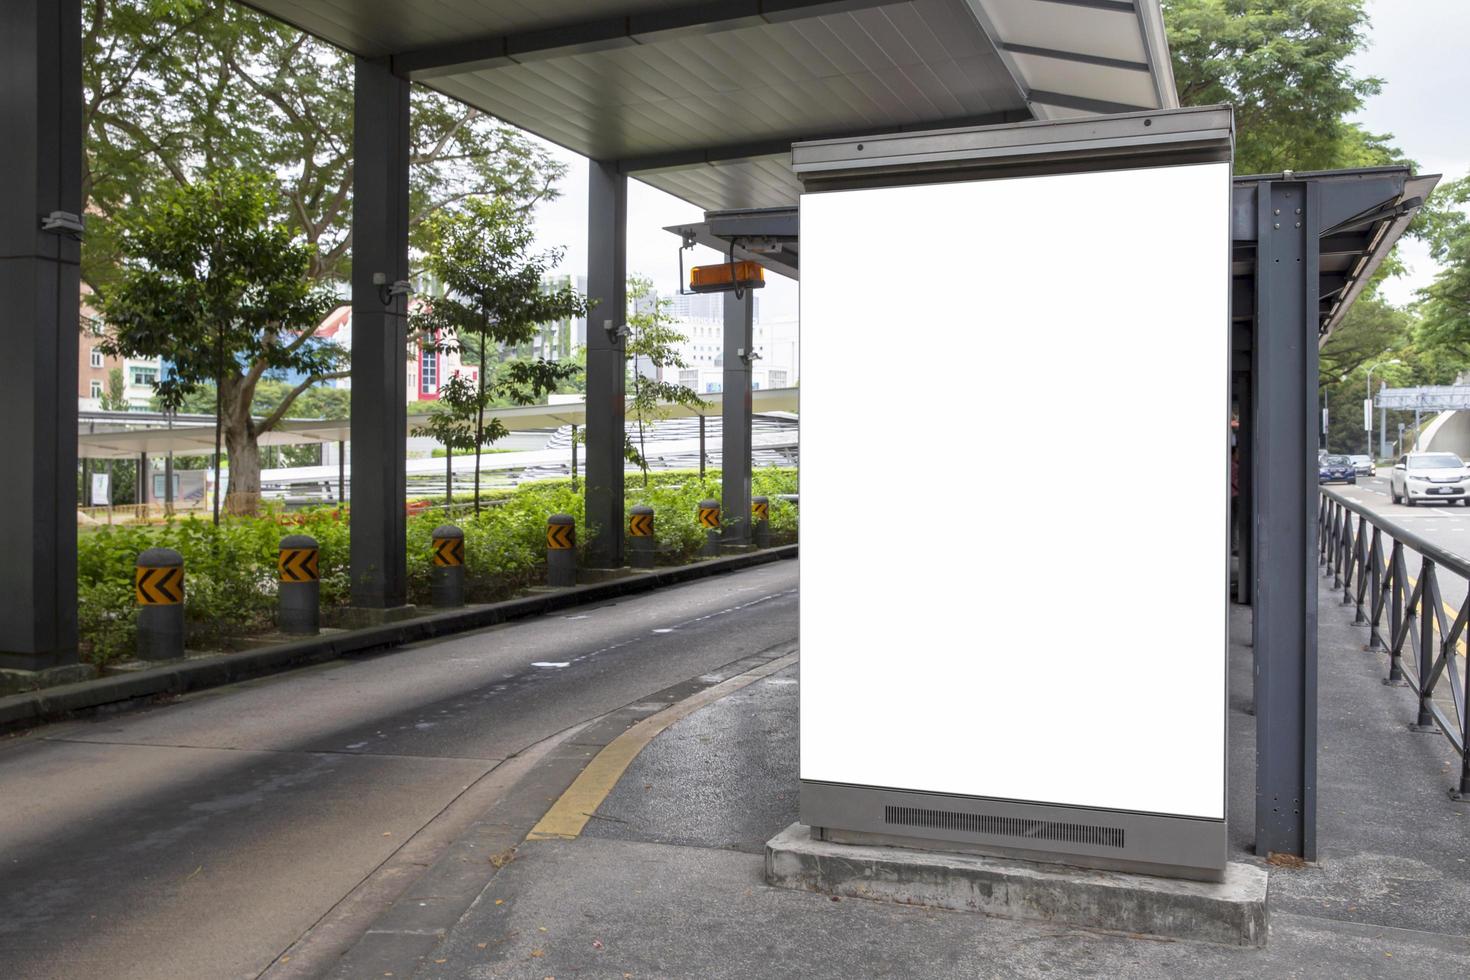 Panneau publicitaire vierge à l'arrêt de bus photo